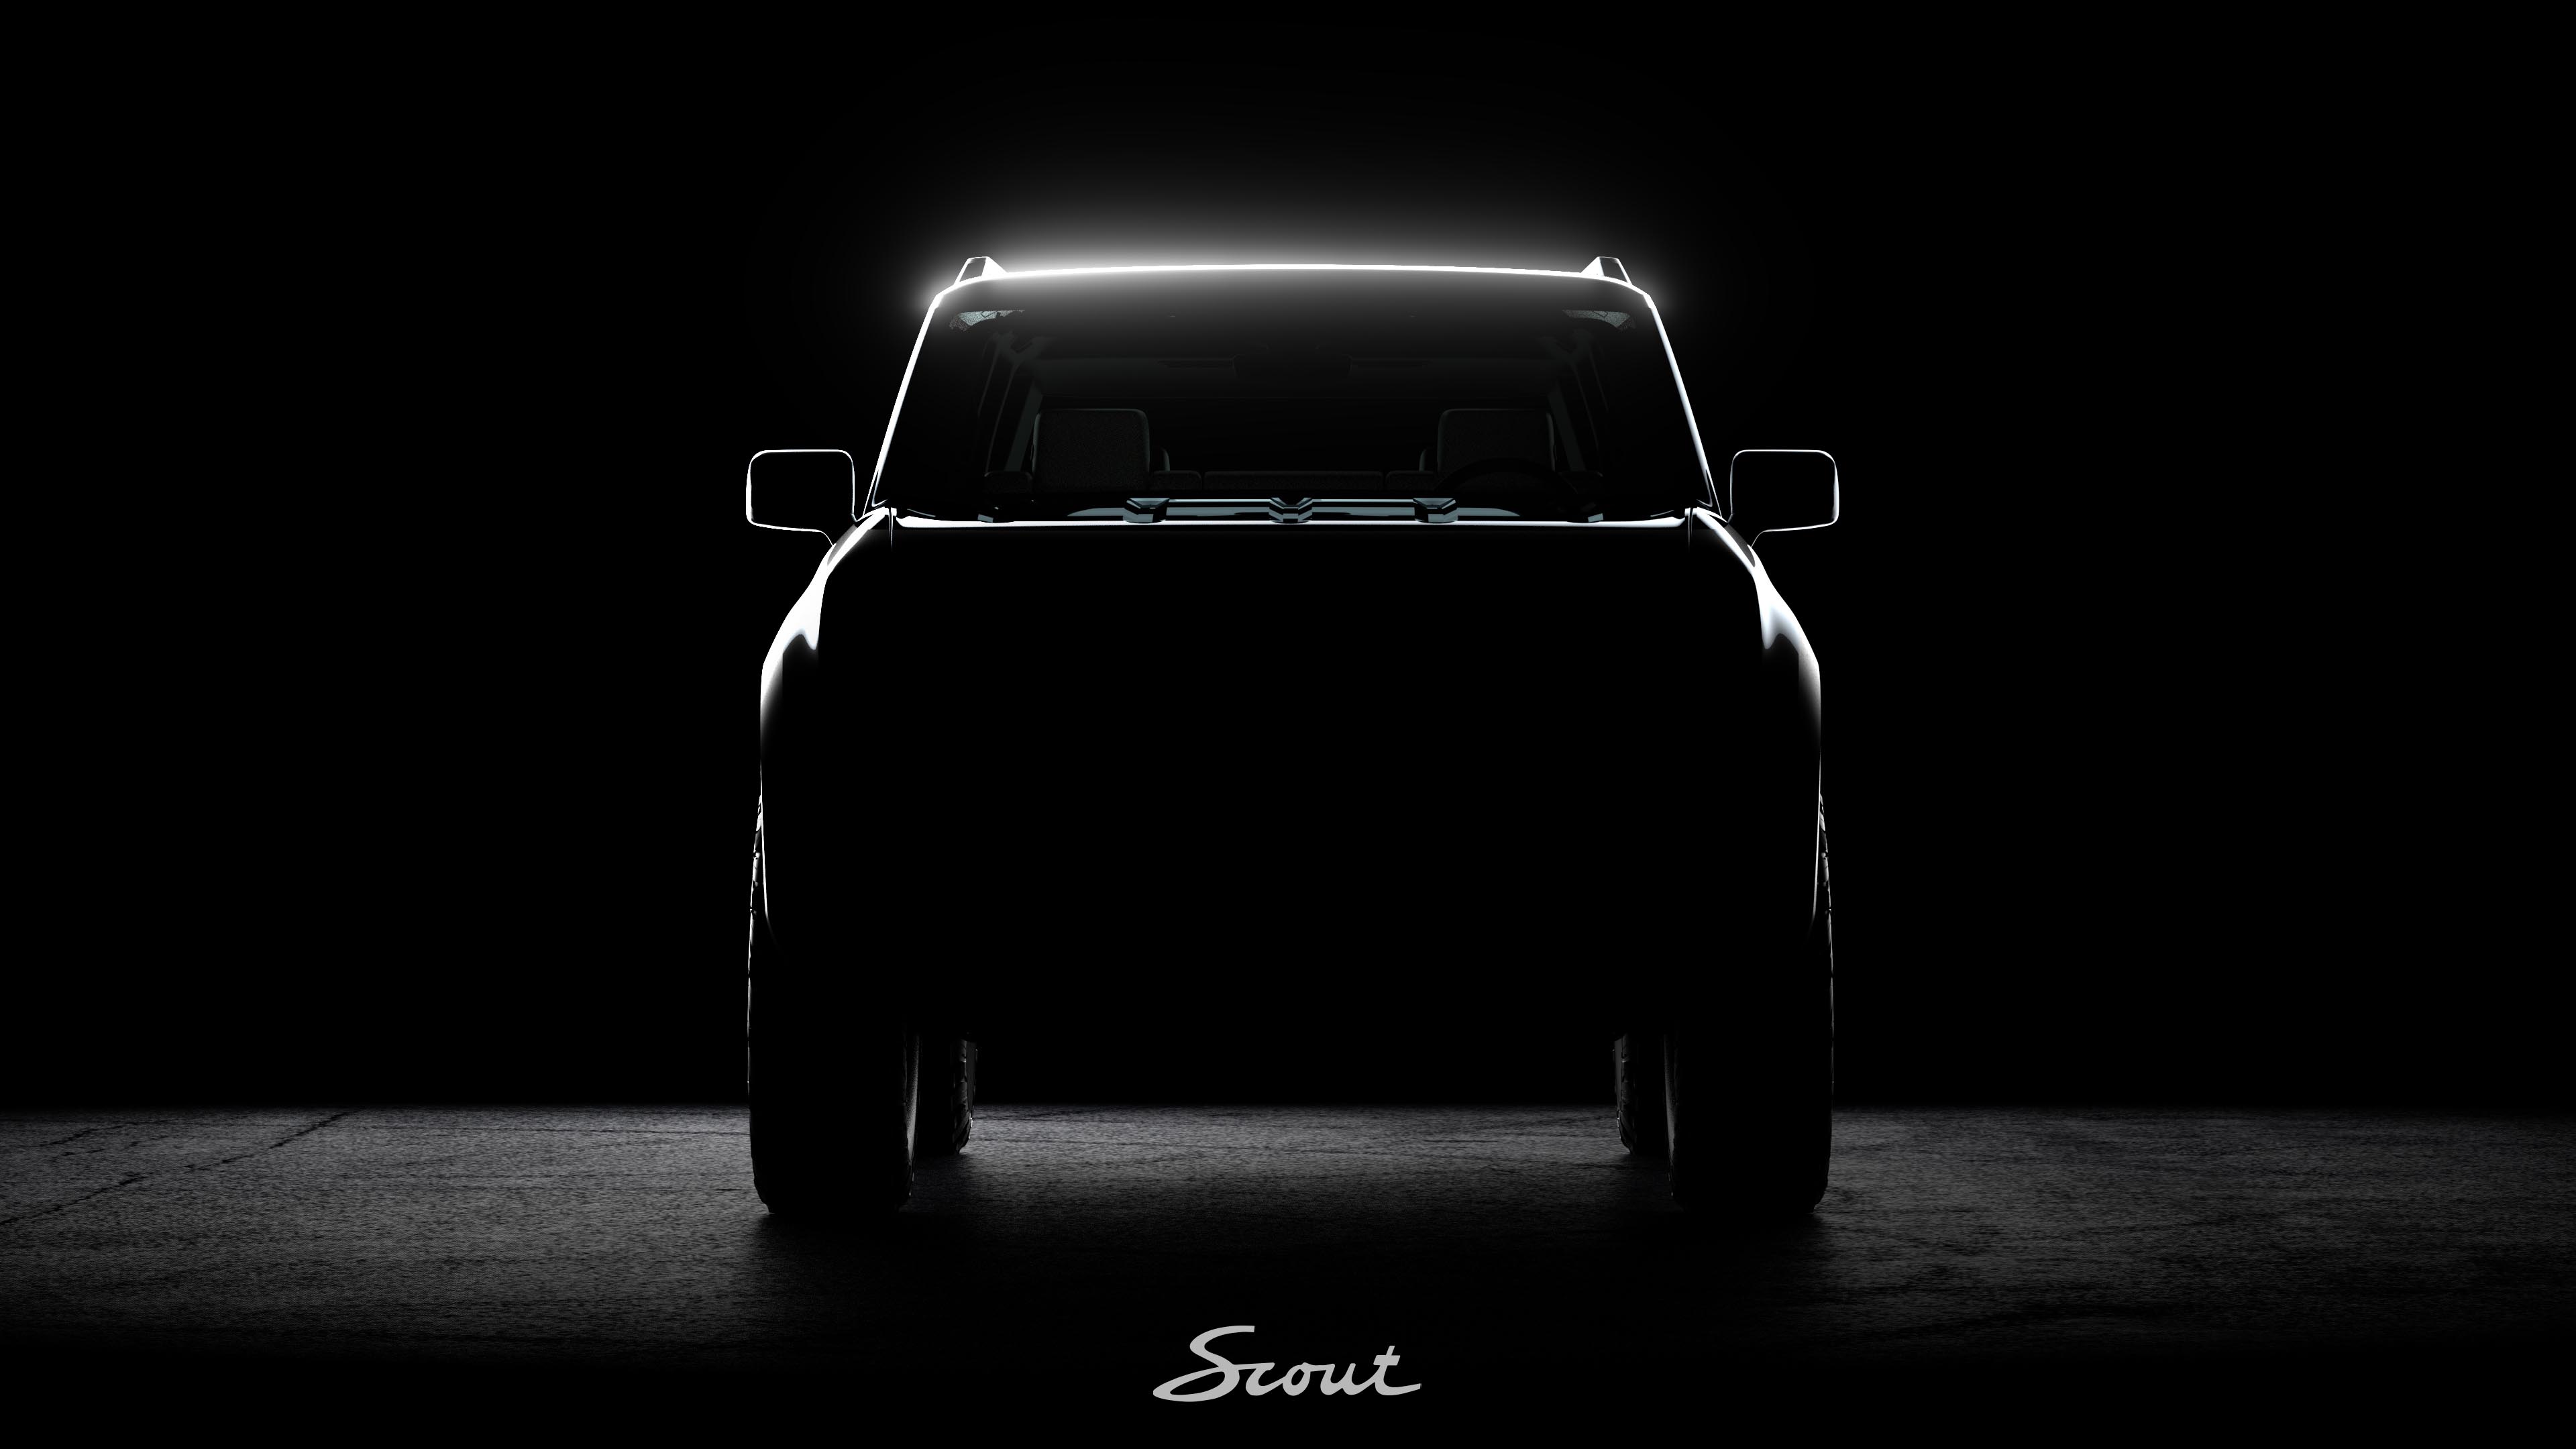 Scout Motors Inc Front Design Teaser.jpg